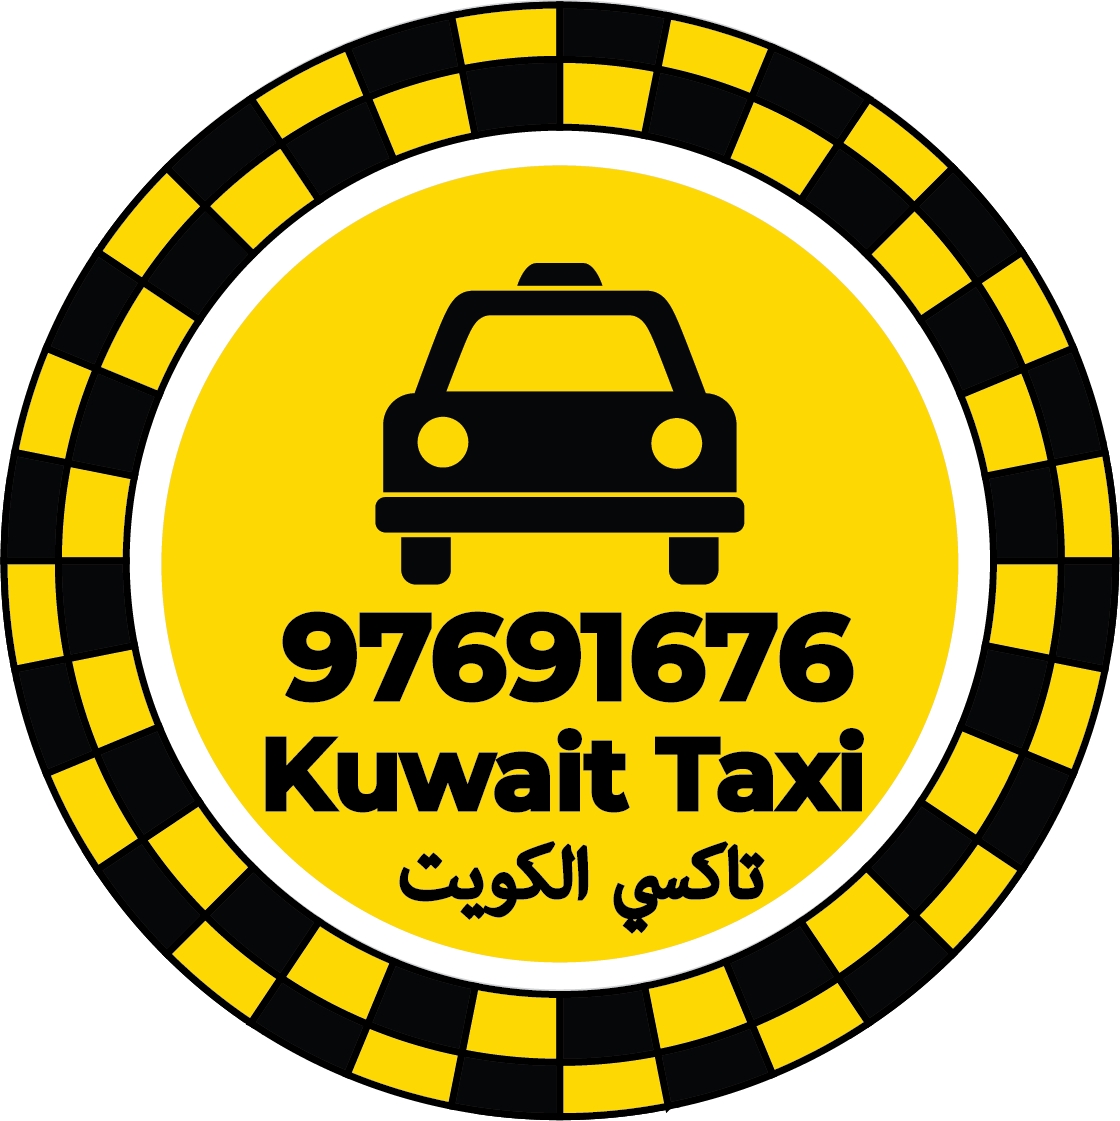 تاكسي الصليبخات 97691676 – ارقام تاكسي في الصليبخات